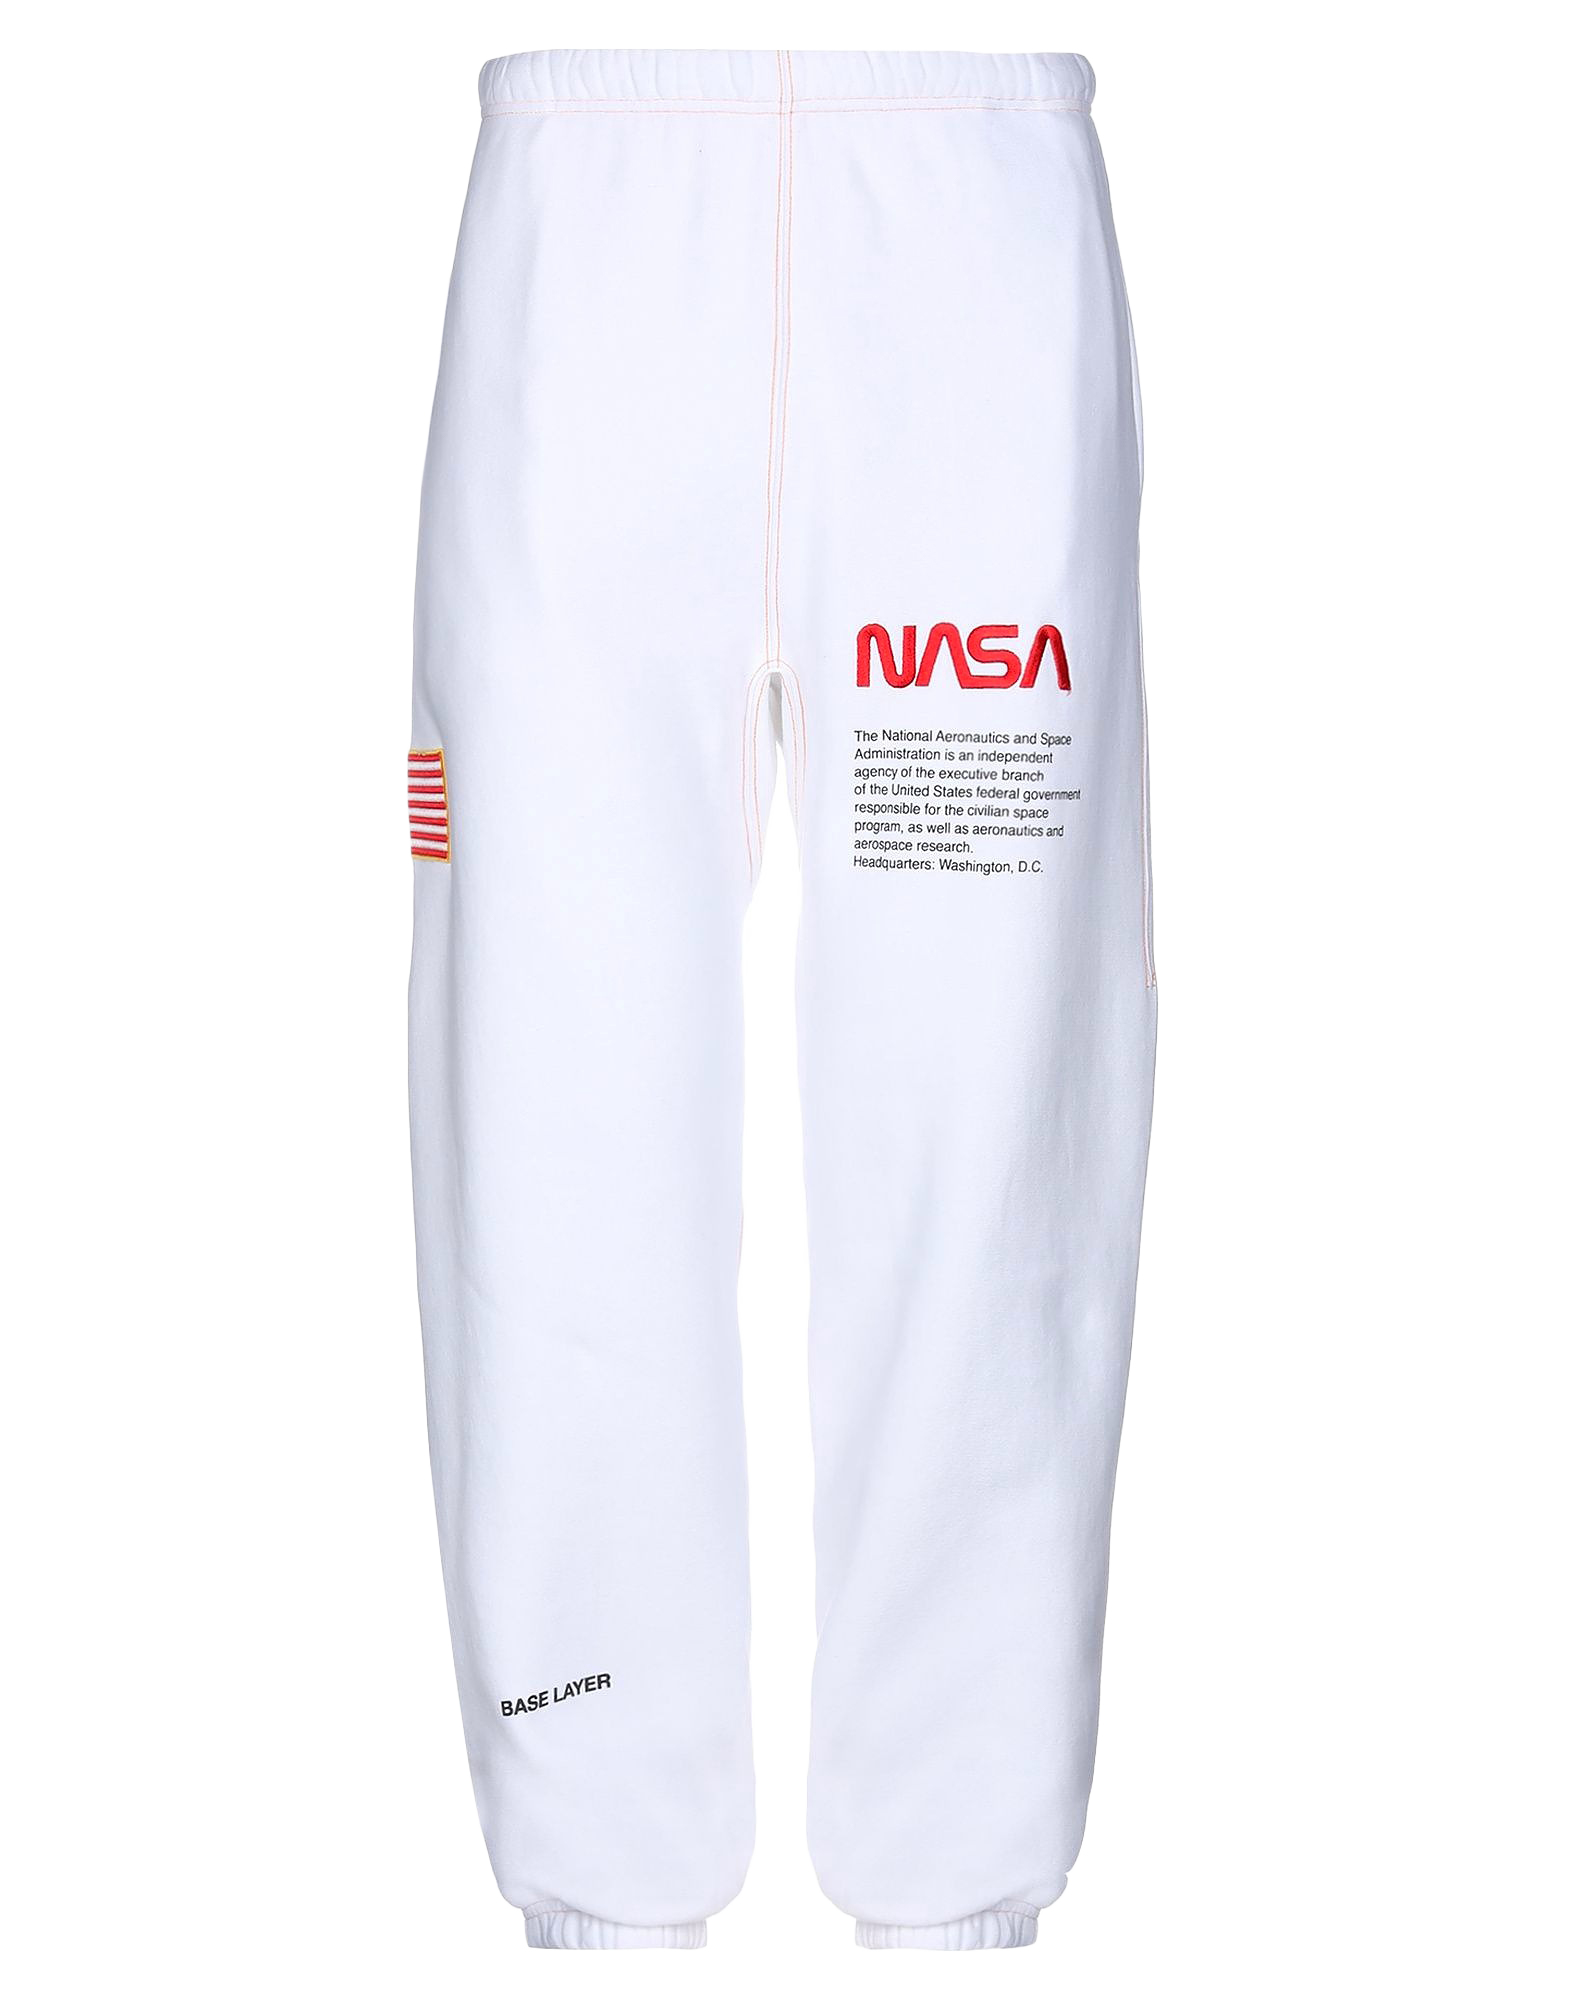 Heron Preston x NASA Sweat Pants White Men's - FW19 - US